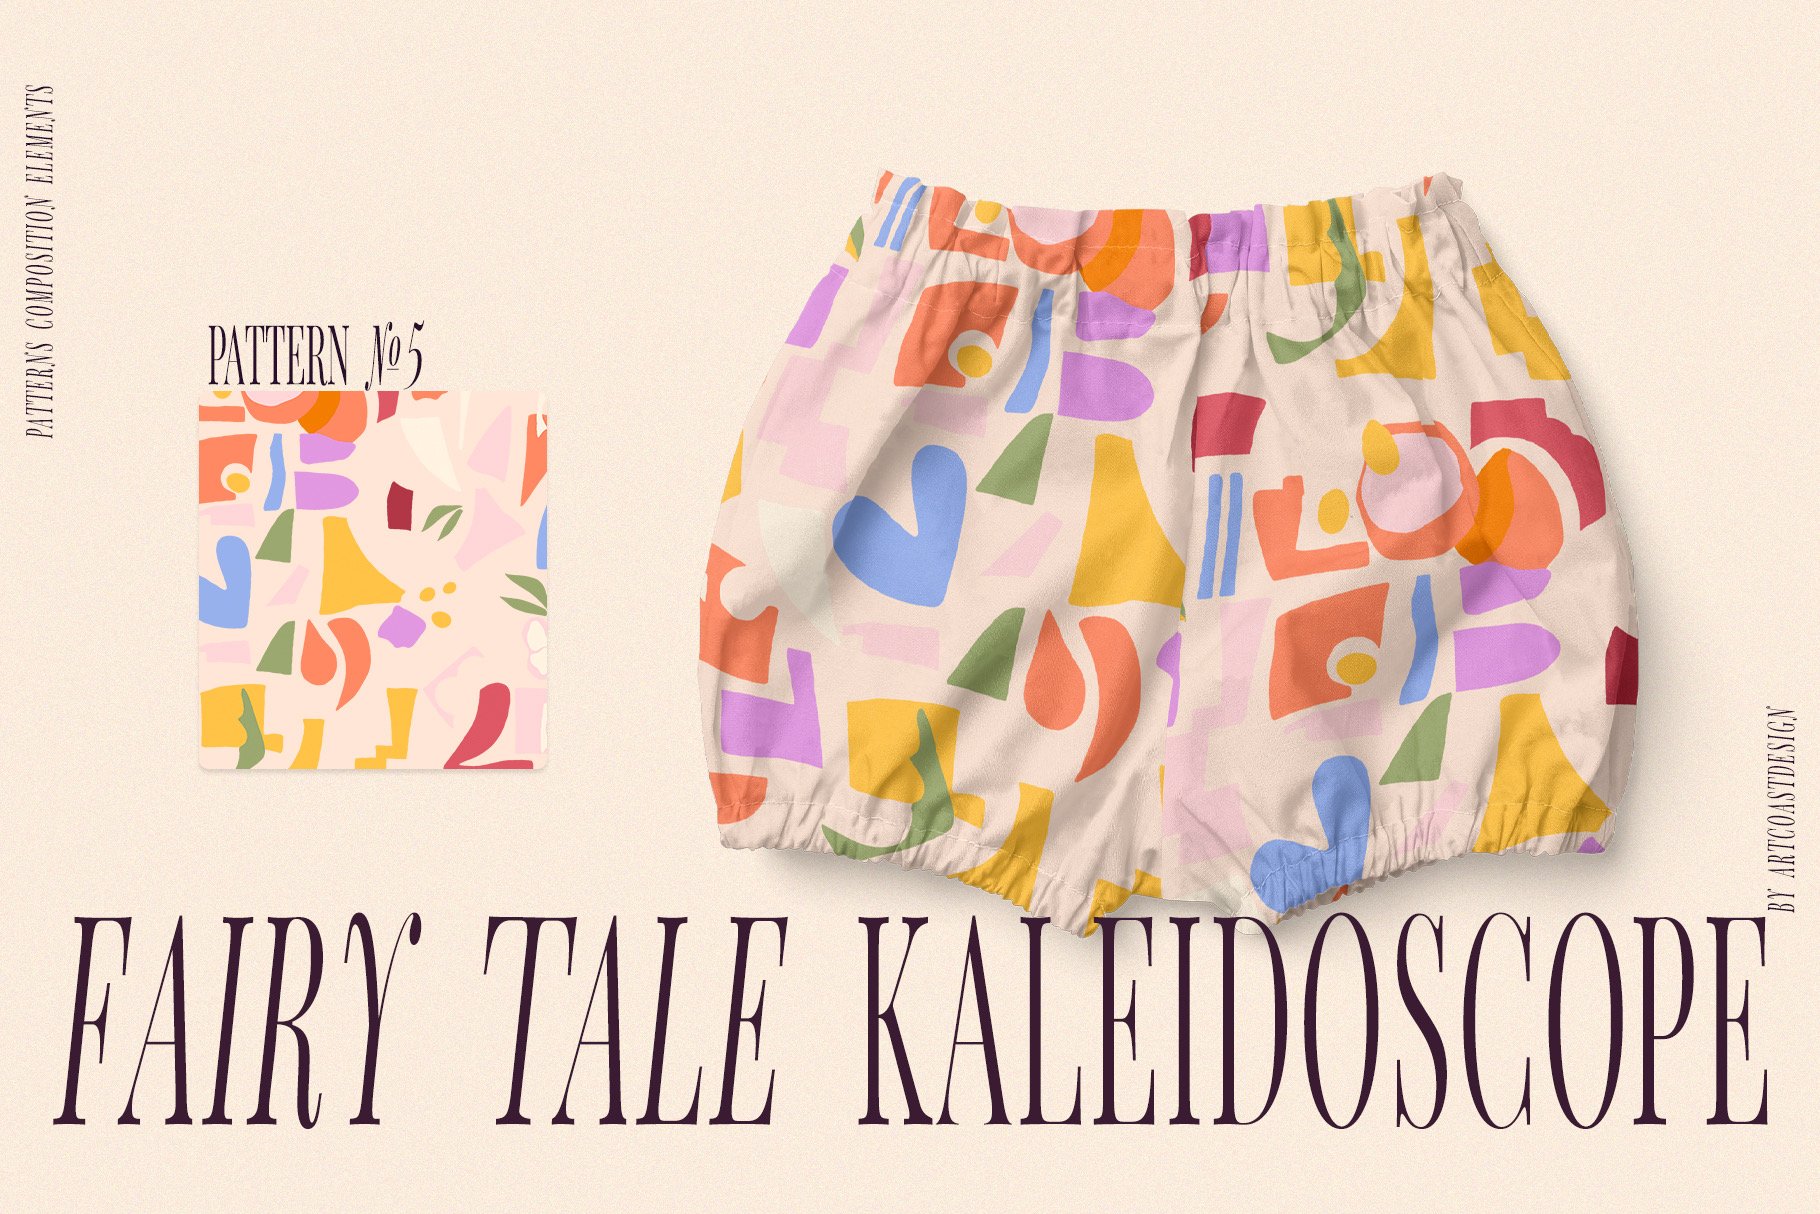 Fairy-Tale-Kaleidoscope-Vector-Art-Patterns-1.jpeg